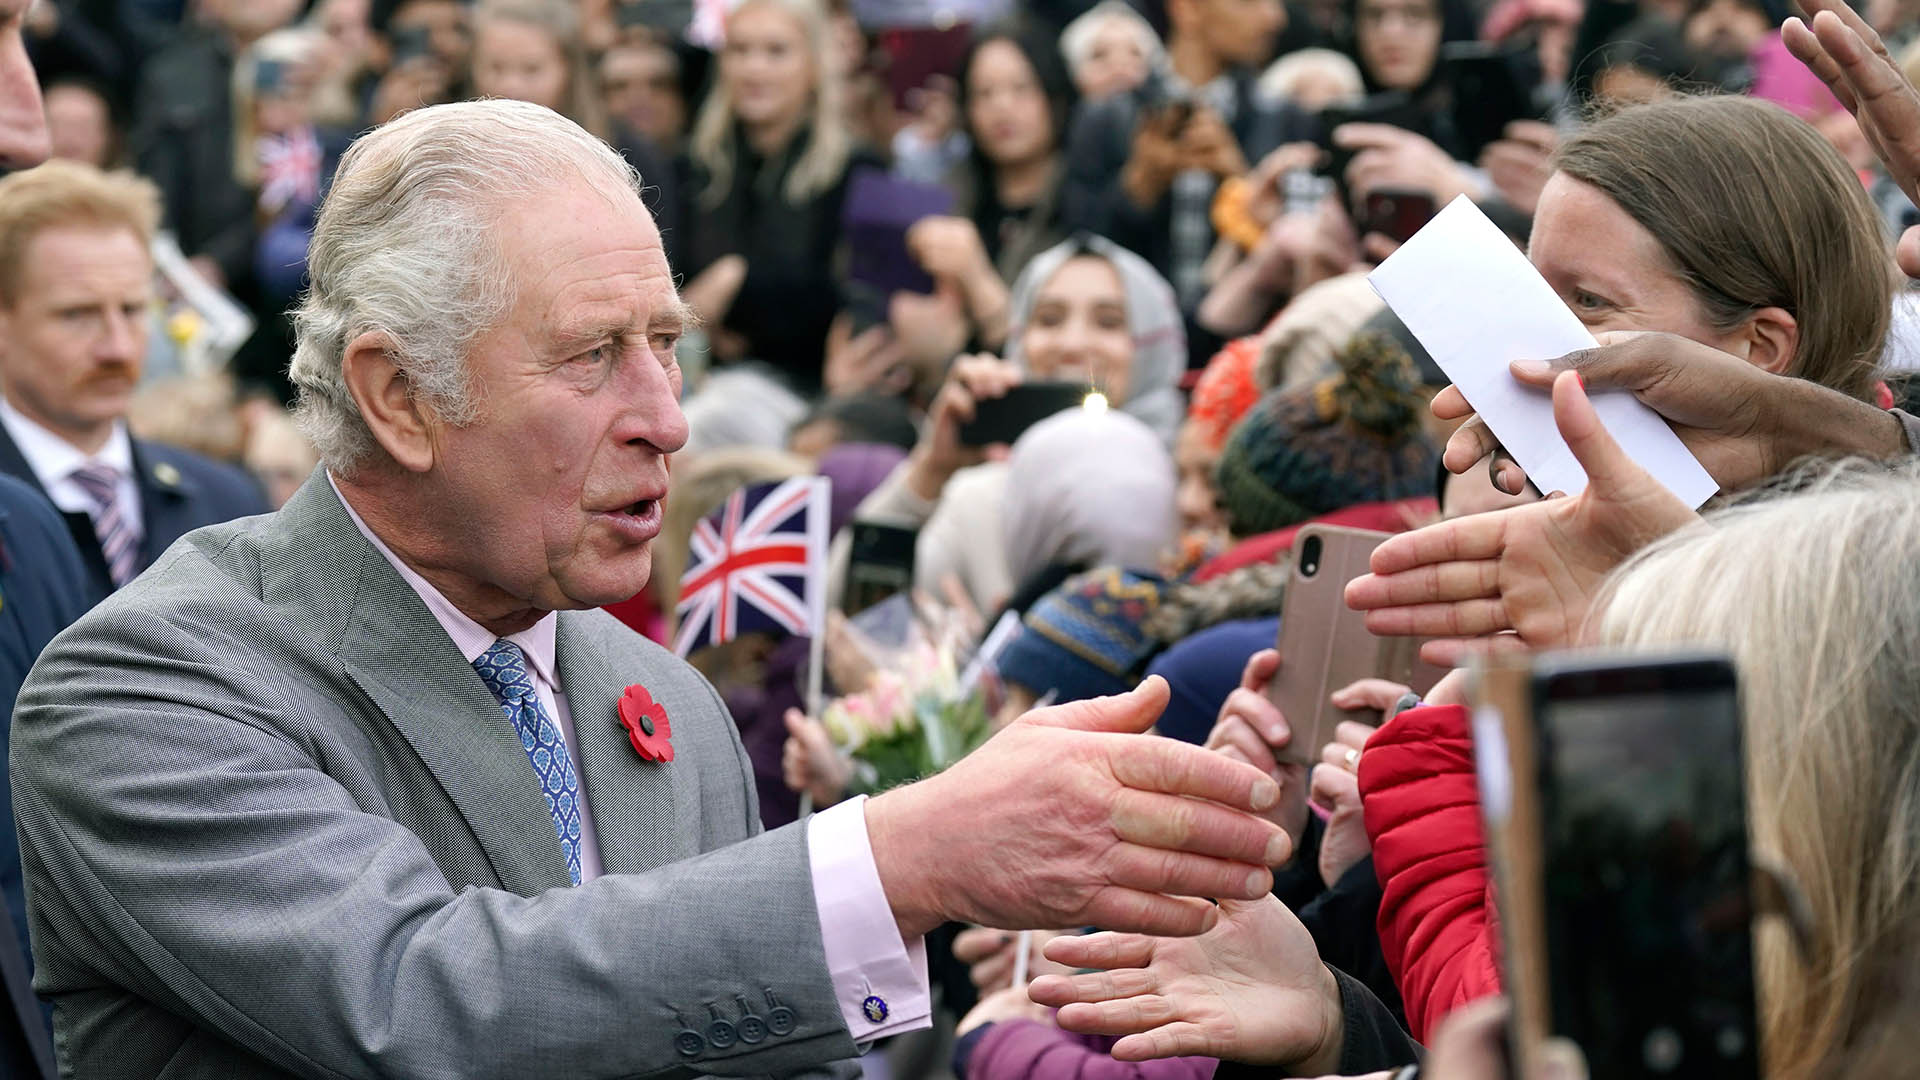 Lanzan huevos contra el rey Carlos III mientras saluda al pueblo: ya hay un detenido